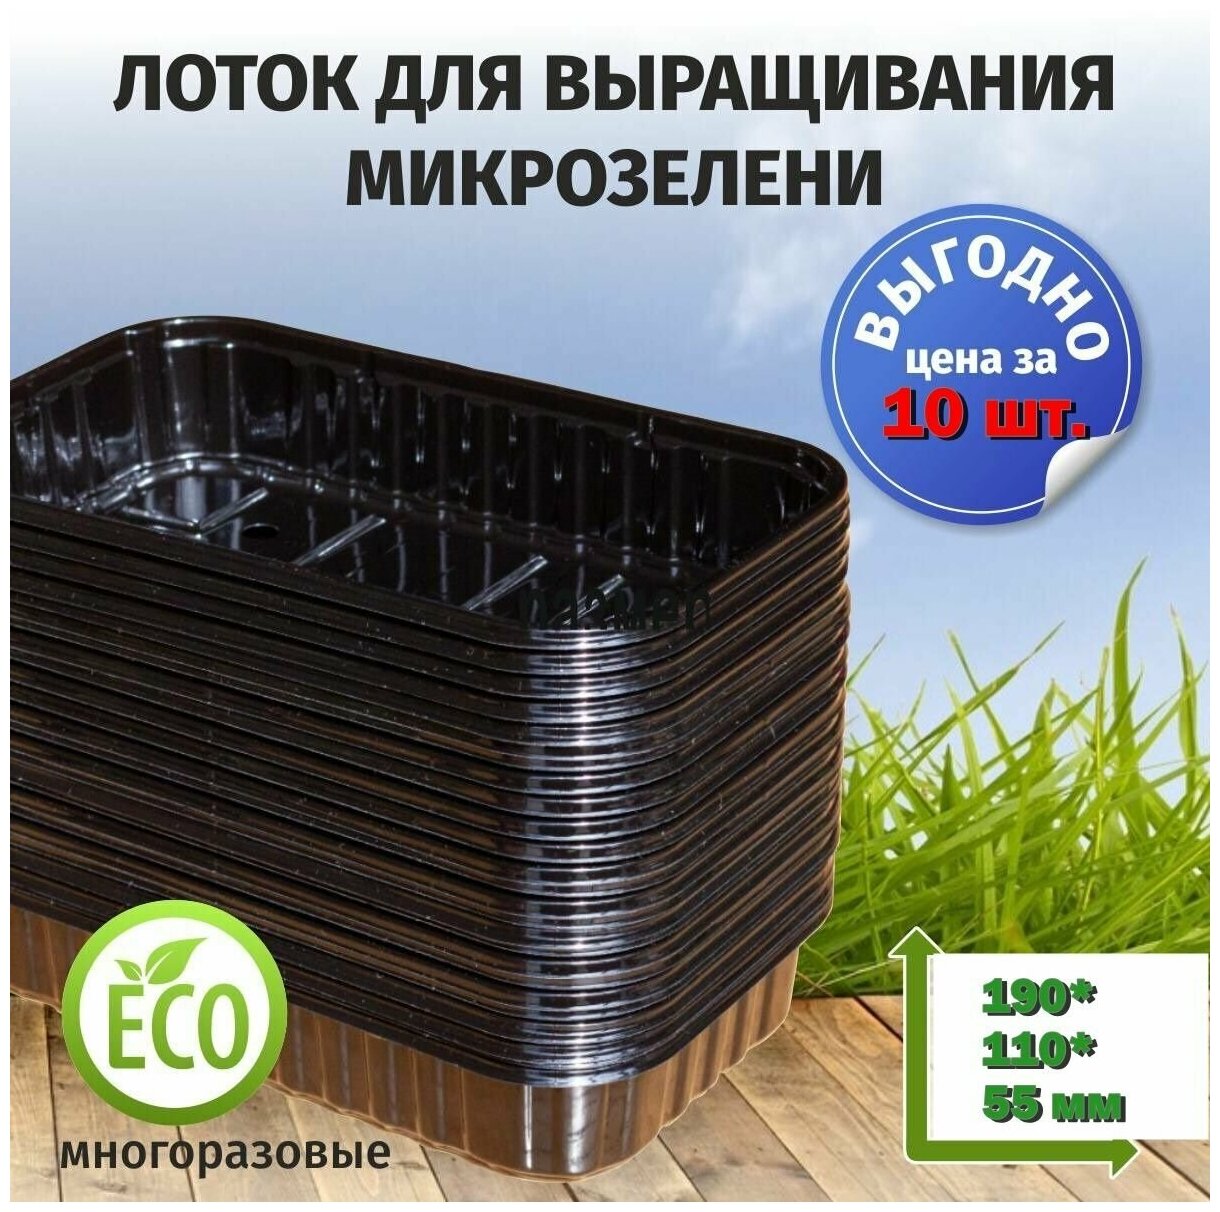 Лотки для микрозелени черного цвета / 190*110*55 / 10 штук, пластиковые контейнеры для проращивания рассады микрозелени